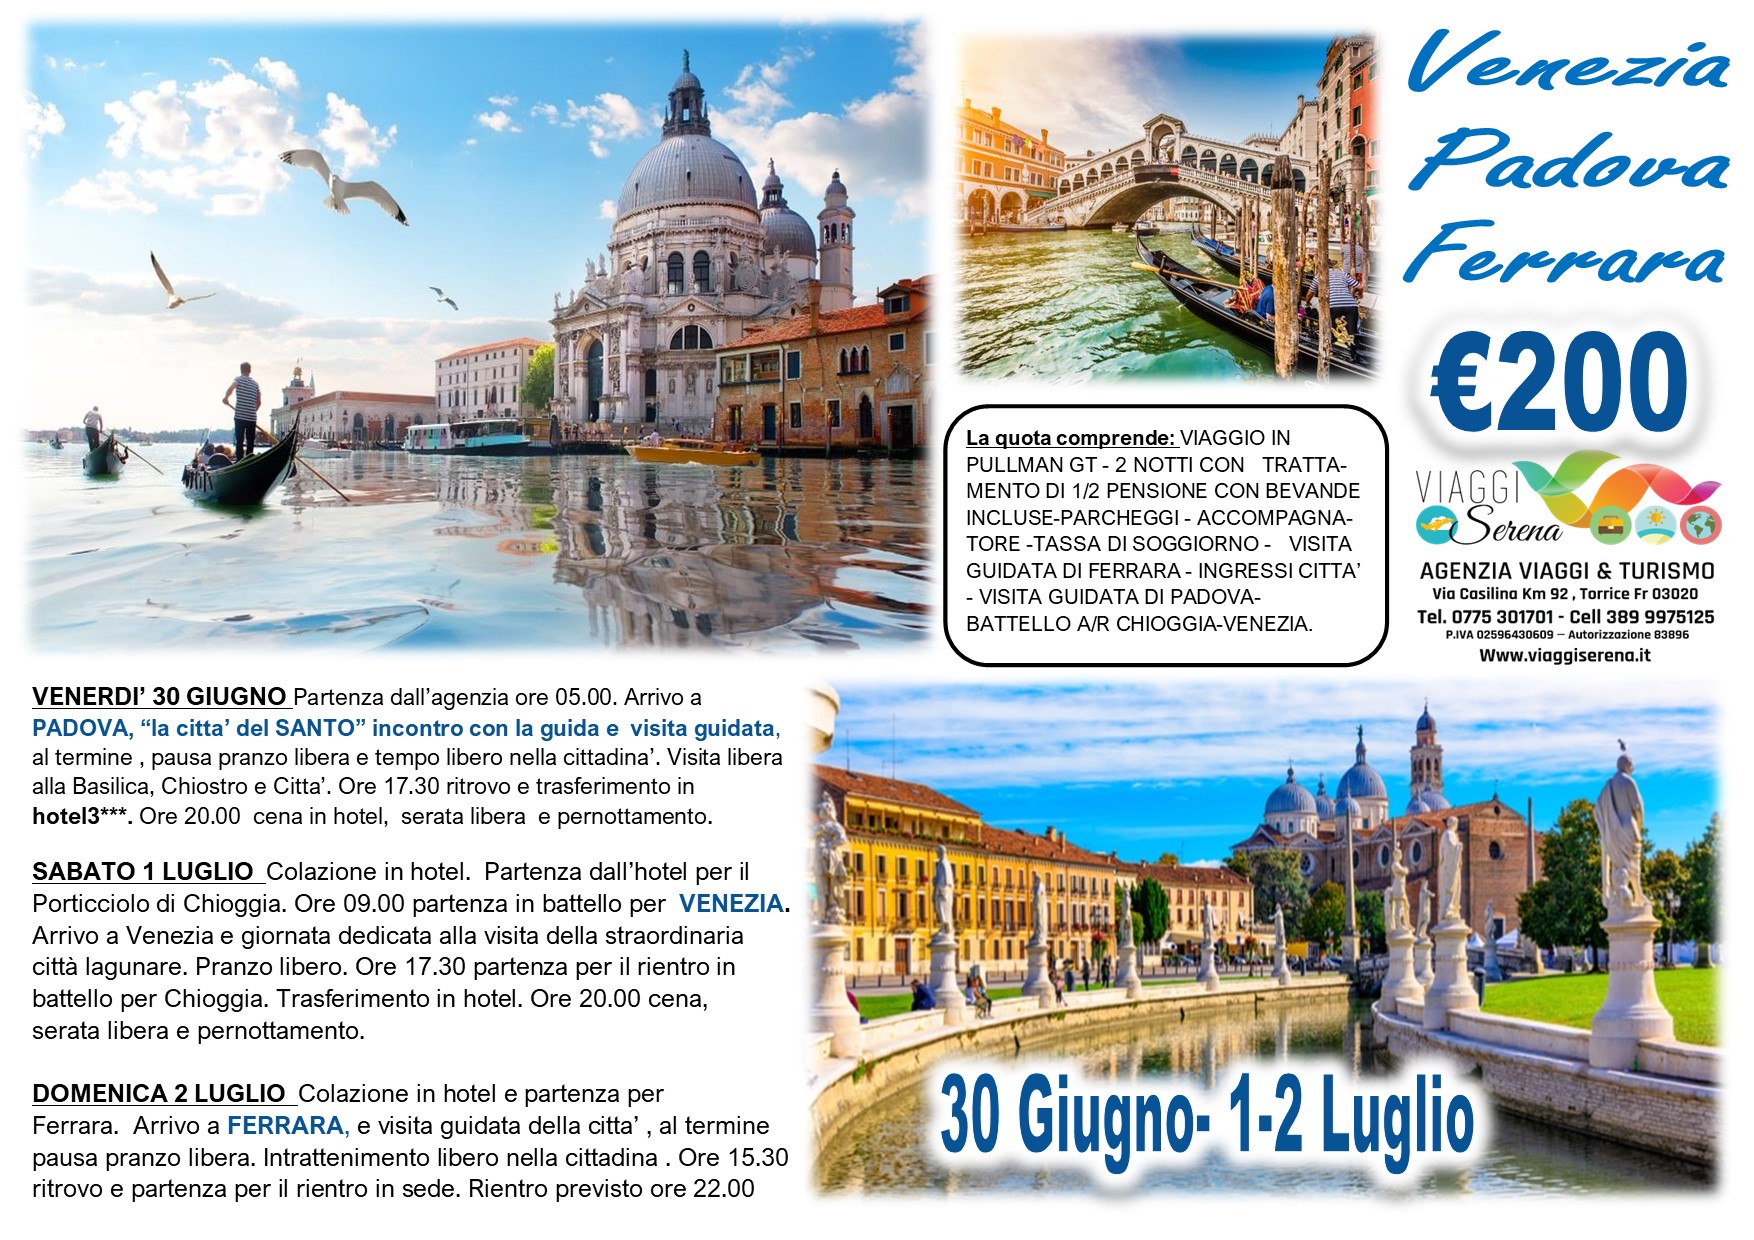 Viaggi di Gruppo: Venezia, Ferrara & Padova 30 Giugno-1-2 Luglio € 200,00